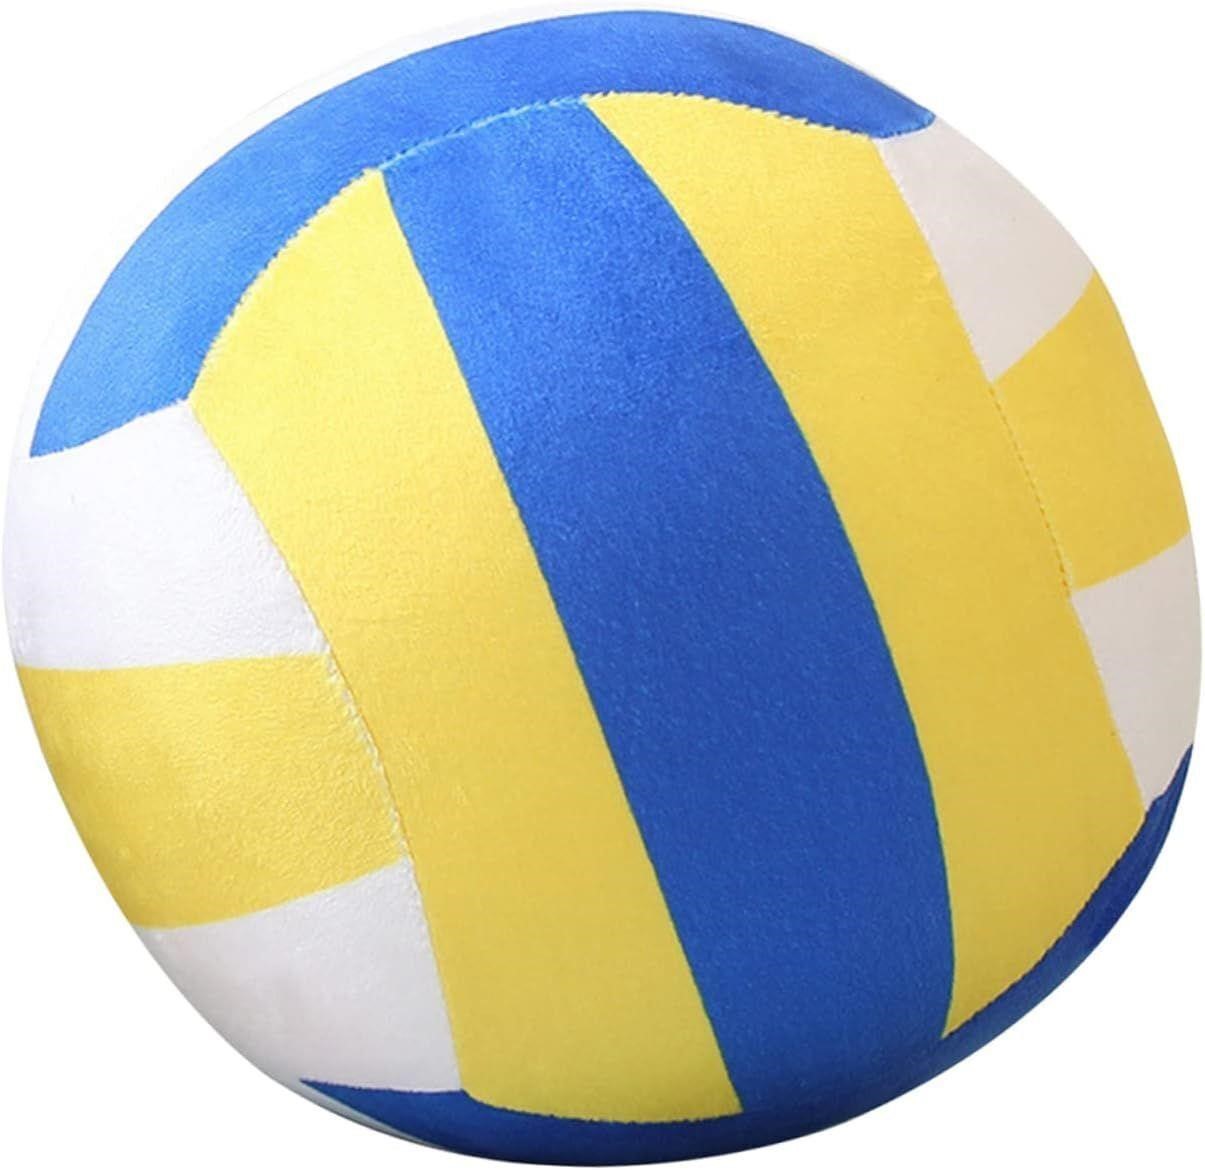 NEW $30 Stuffed Volleyball Plush